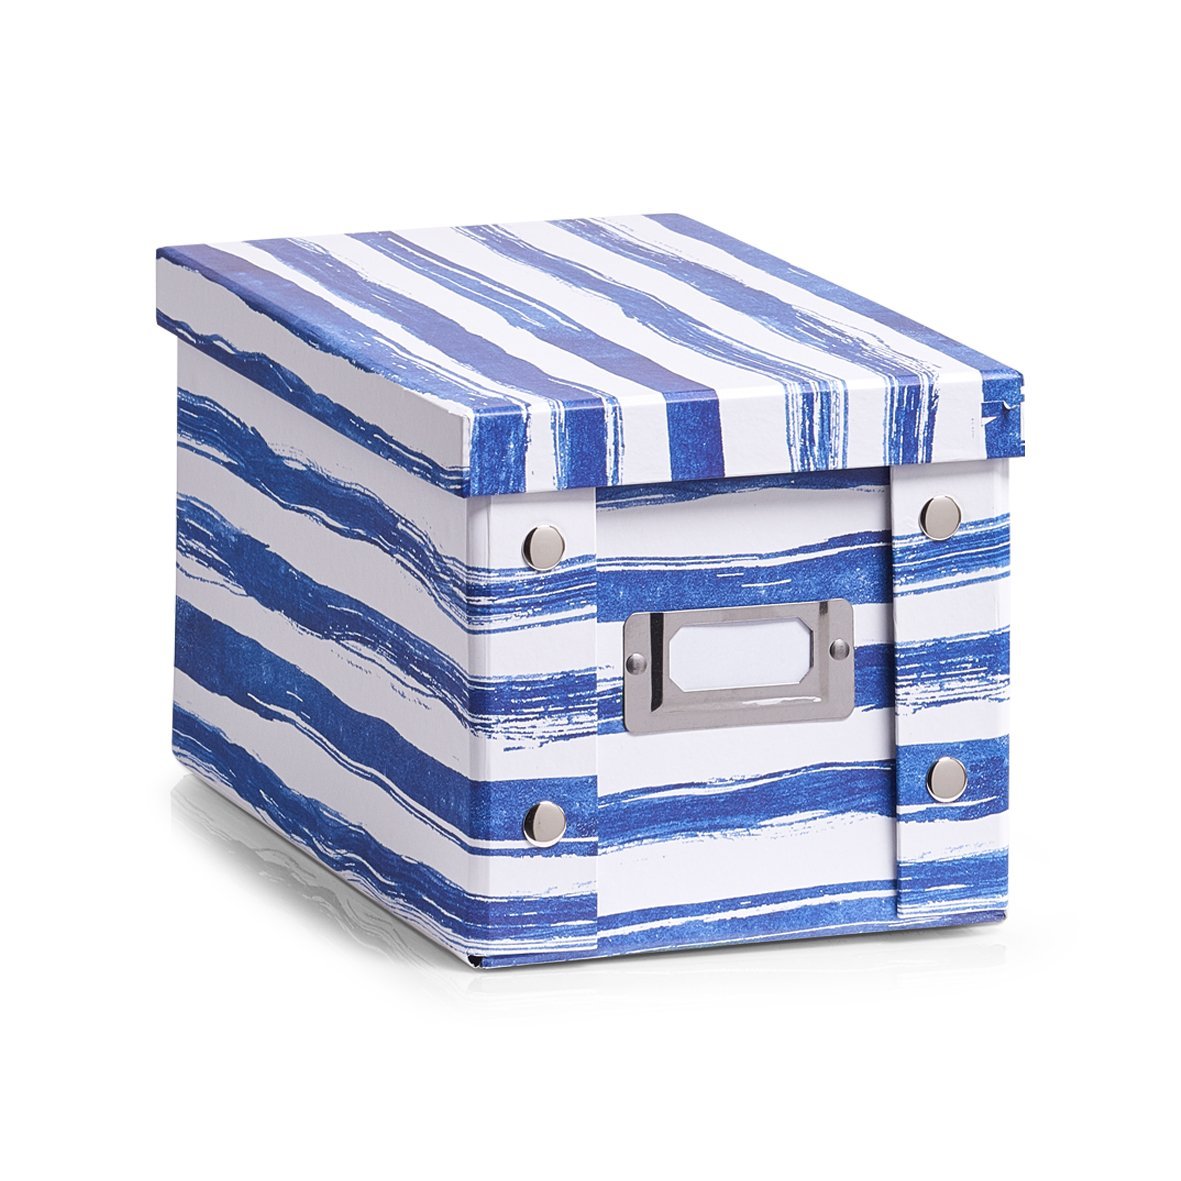 2x Zeller Aufbewahrung Box mit Deckel "Blue Stripes" für 20 CD Kiste Karton Case 